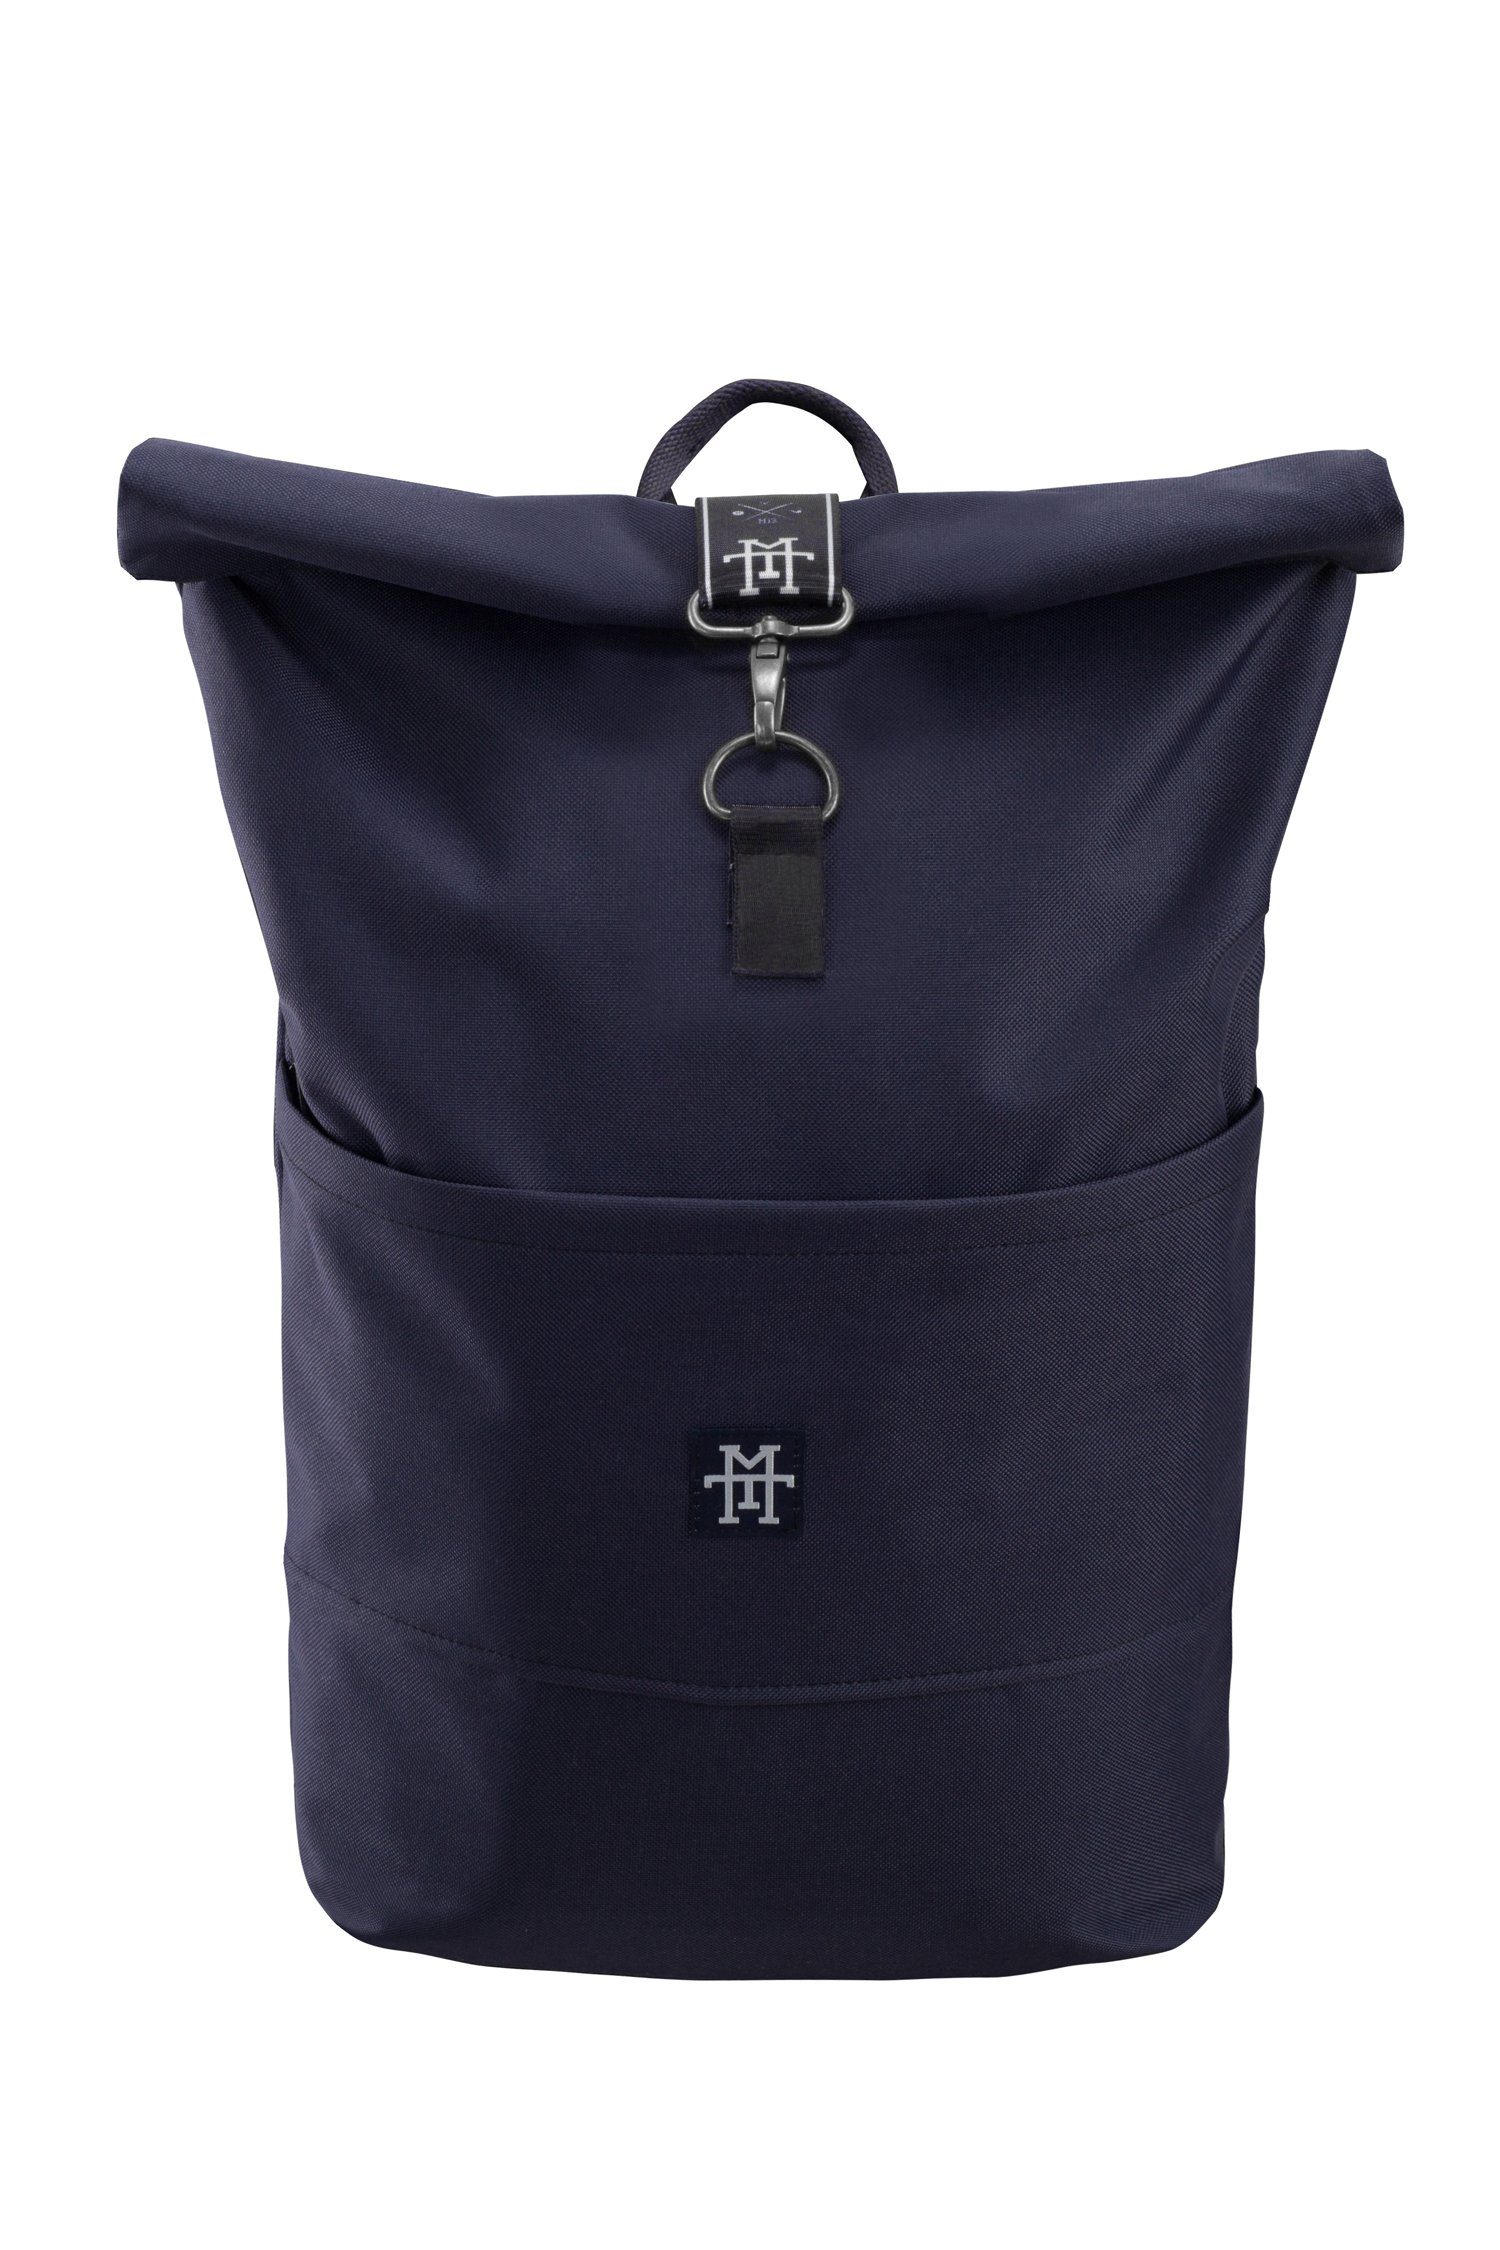 Manufaktur13 Tagesrucksack Roll-Top Backpack - verstellbare Edition Navy Rucksack Rollverschluss, Gurte wasserdicht/wasserabweisend, mit Taped